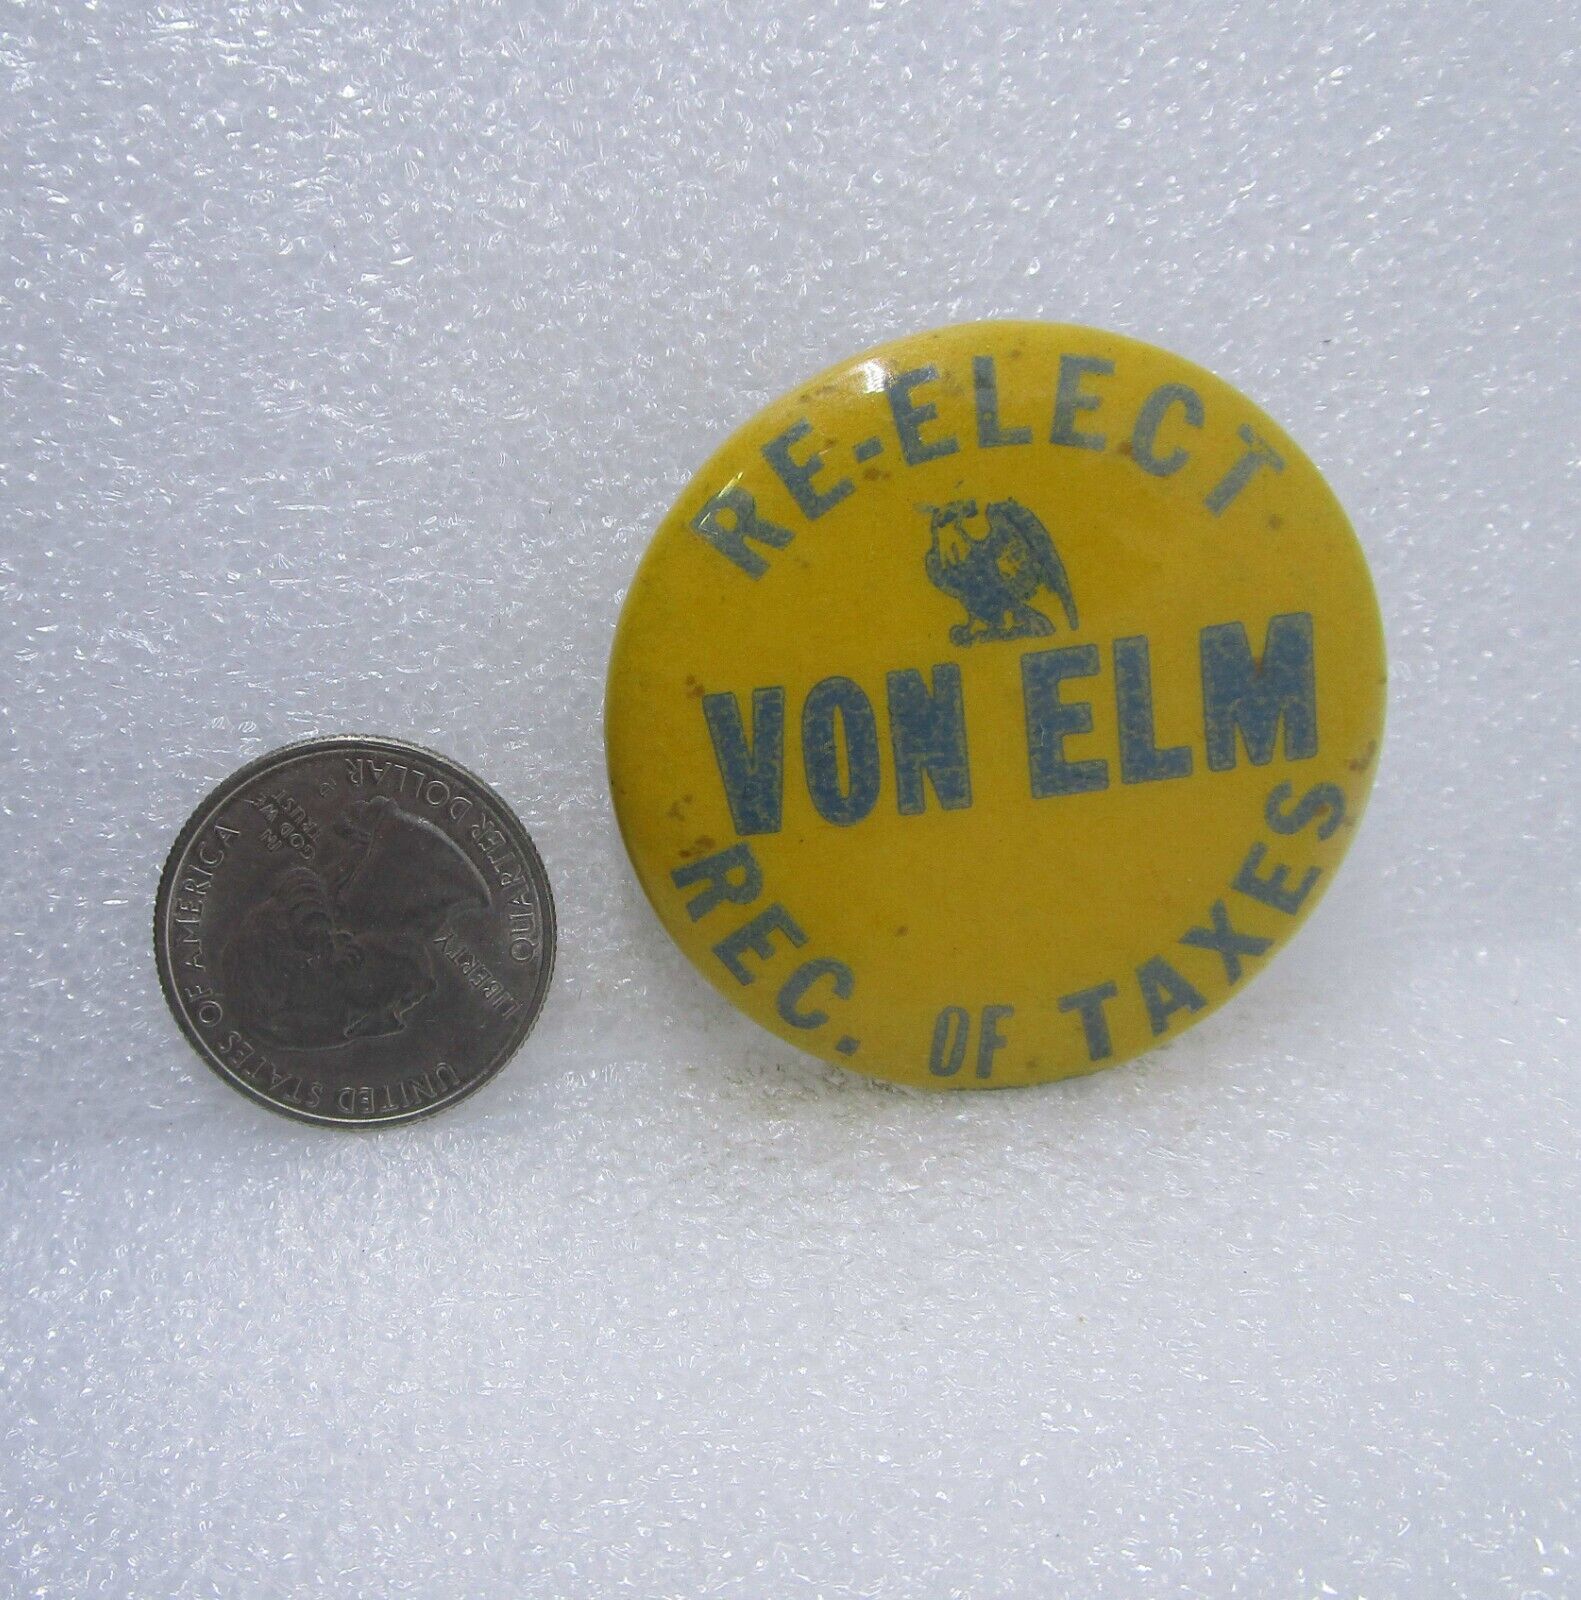 Re-Elect Von Elm Rec. Of Taxes Political Button Pin